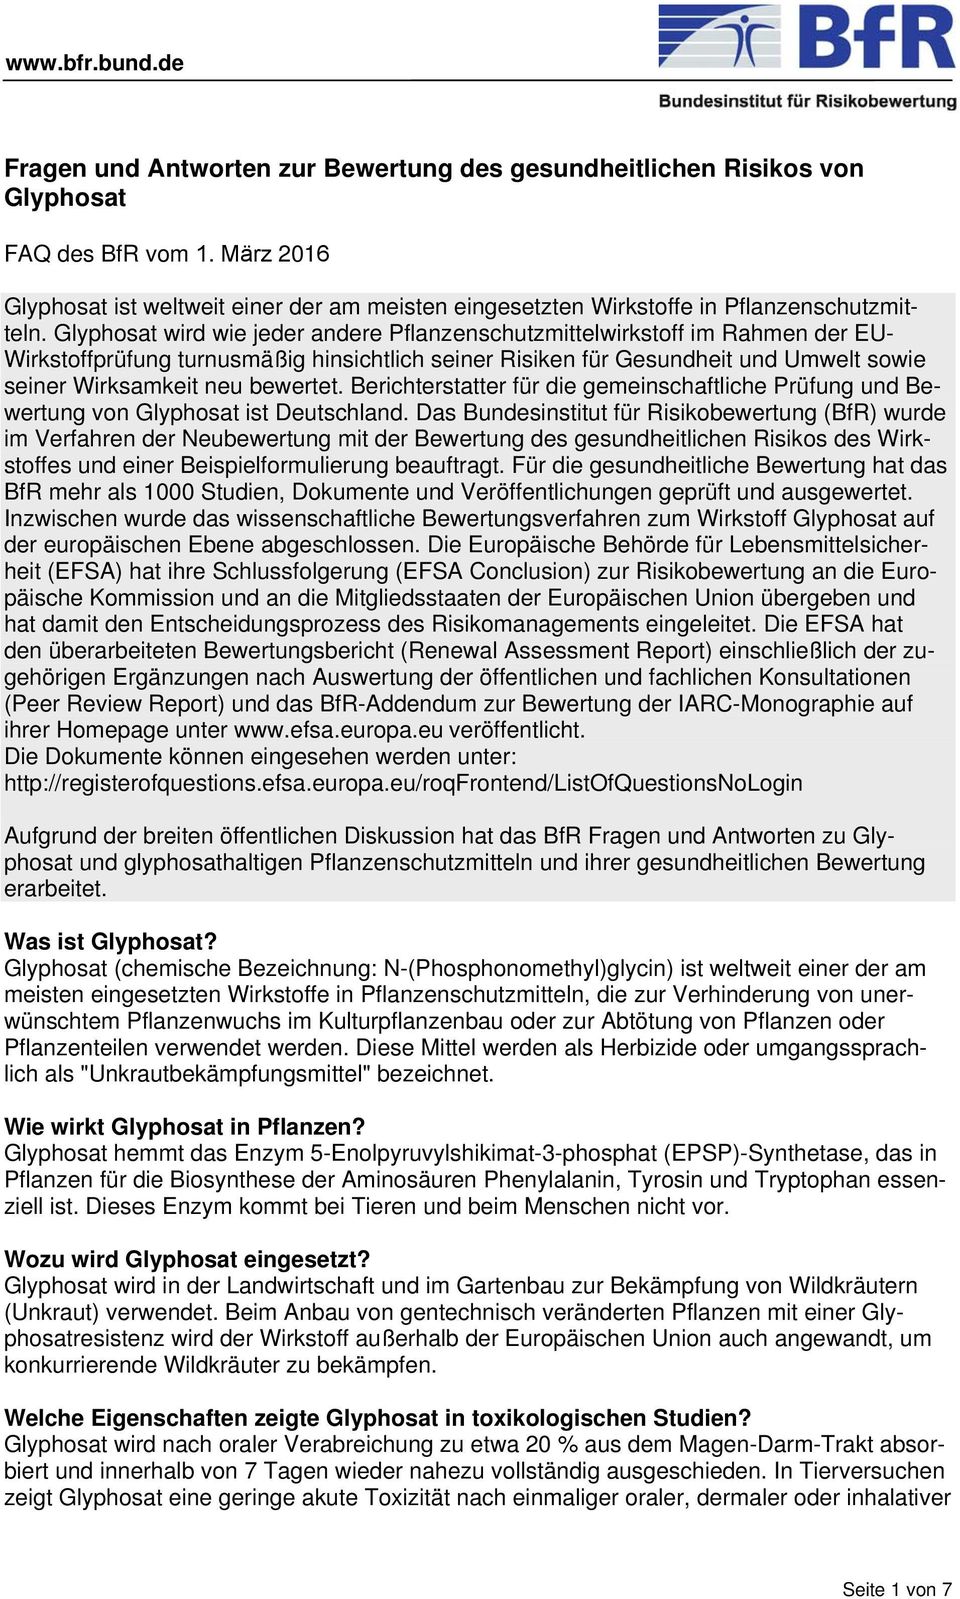 bewertet. Berichterstatter für die gemeinschaftliche Prüfung und Bewertung von Glyphosat ist Deutschland.